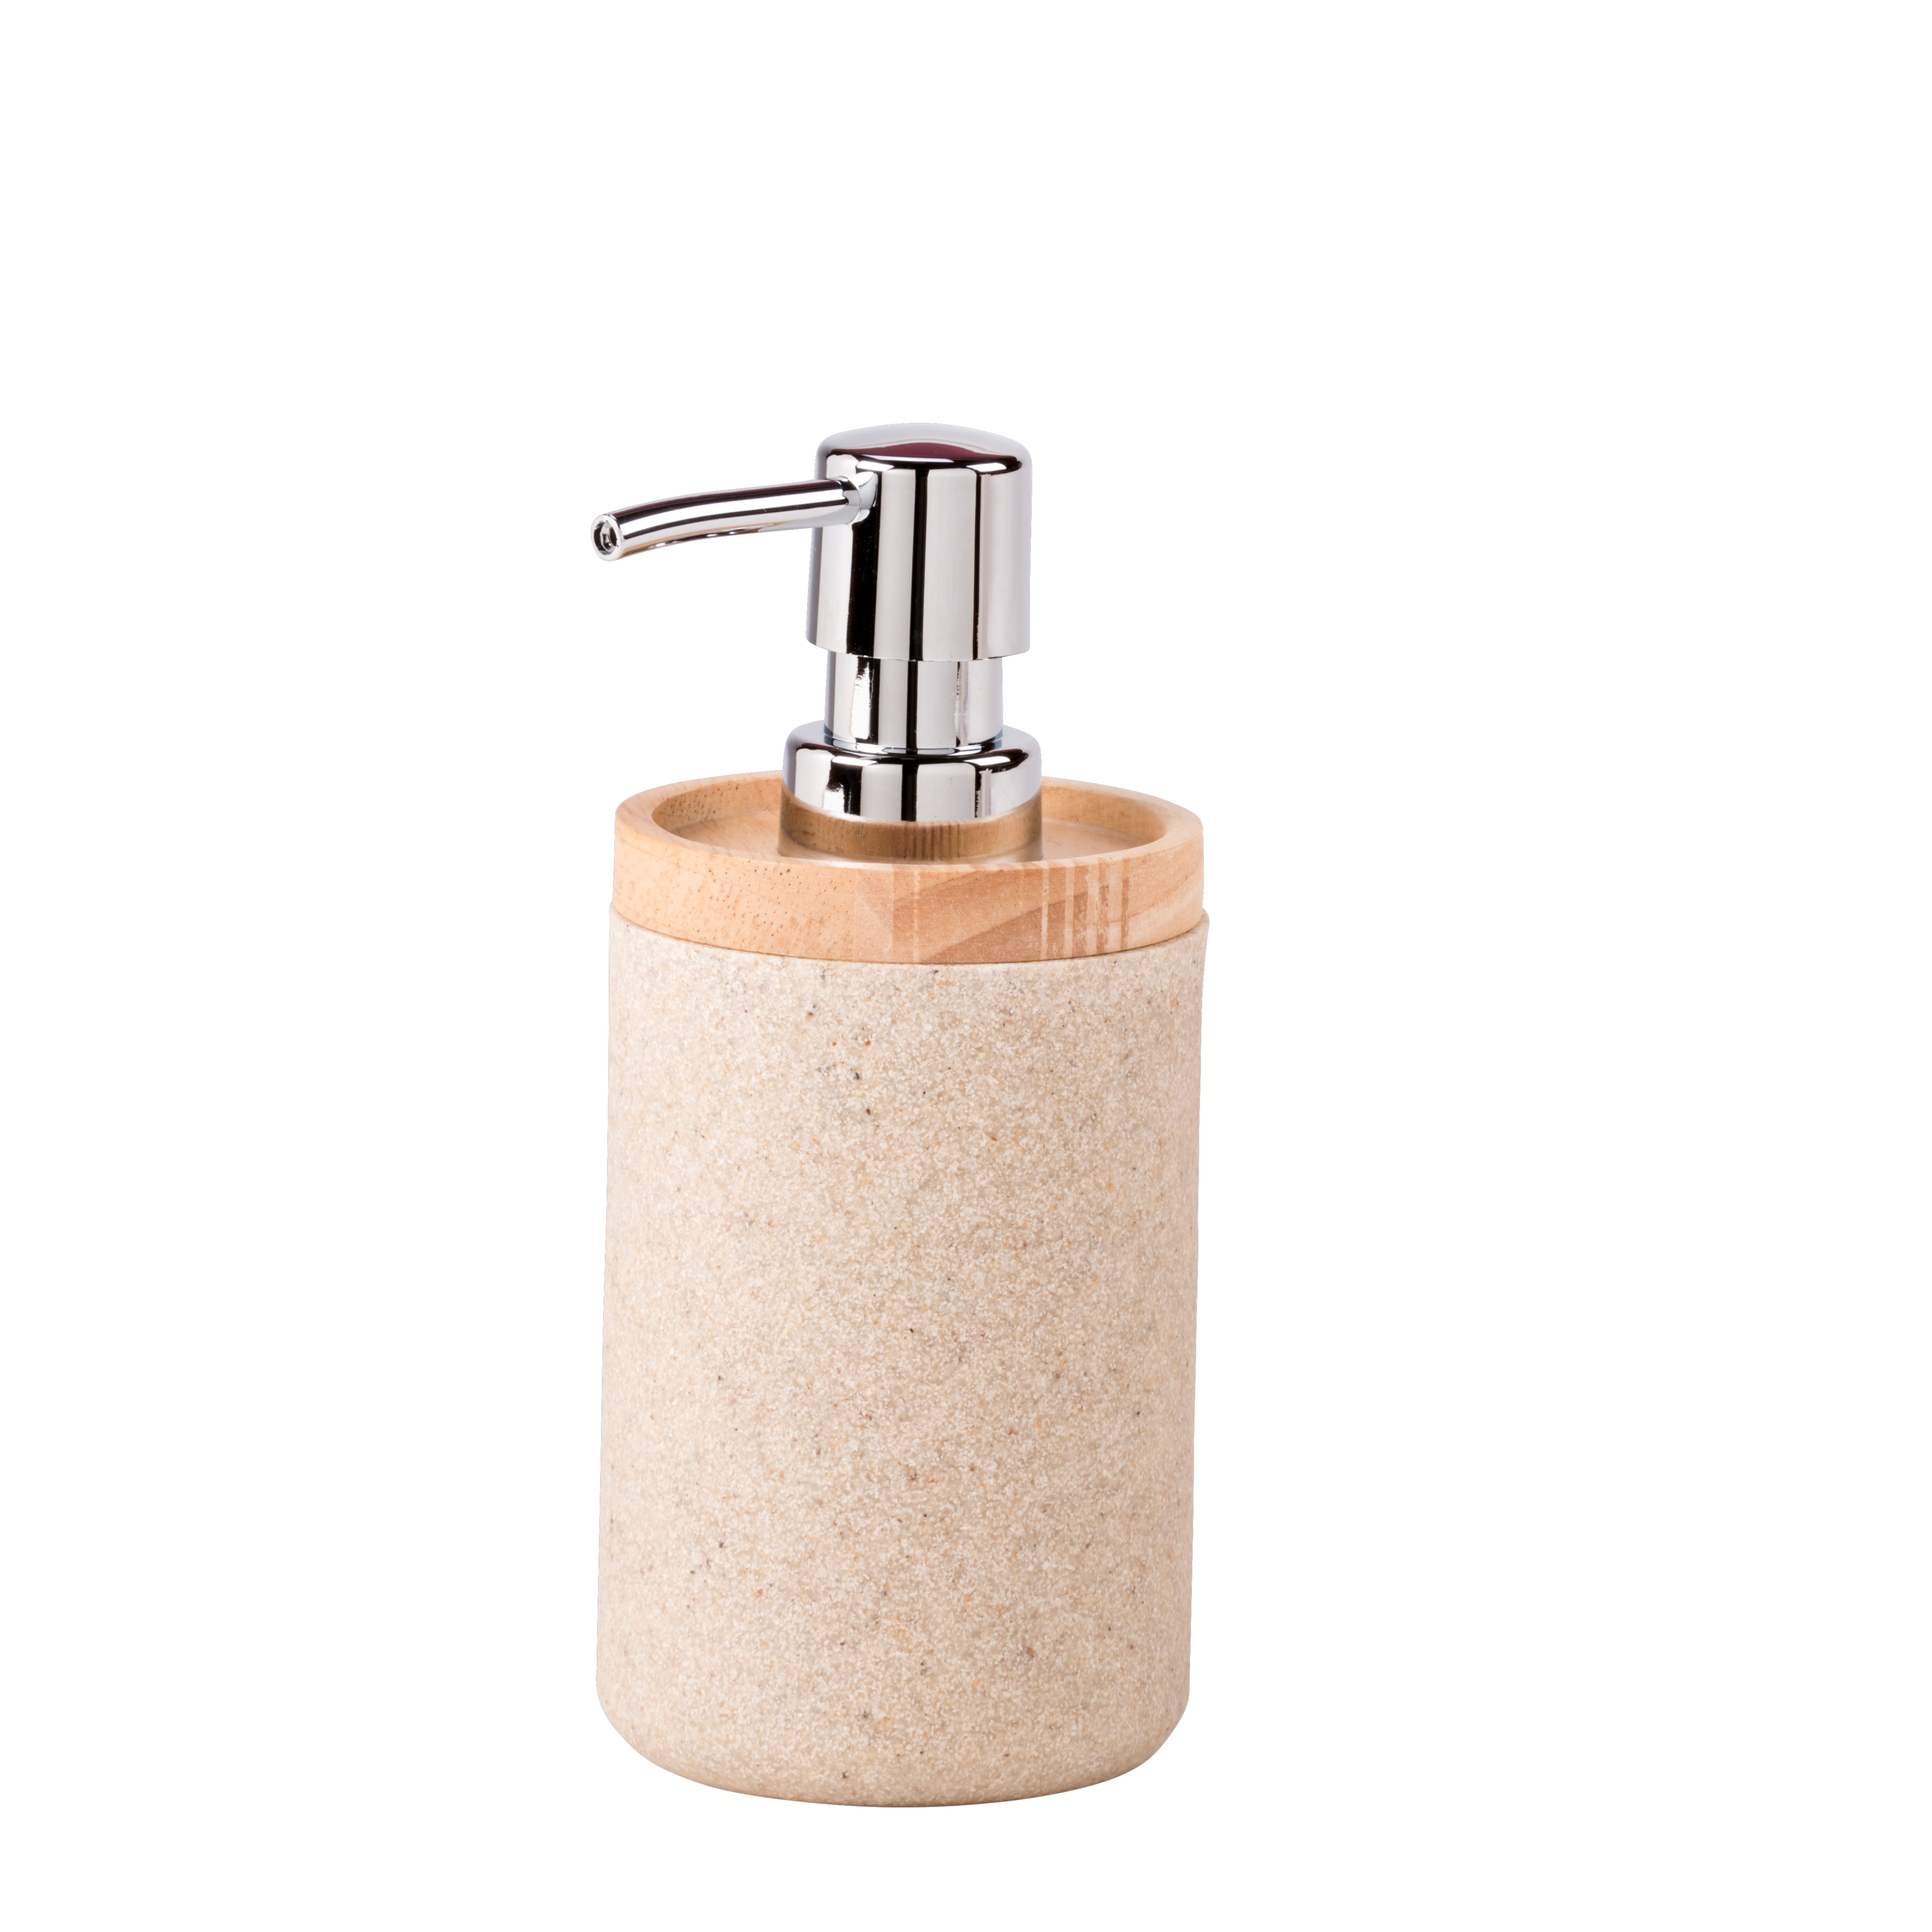 Dispensador dosificador de pared para jabón o shampoo - Canela Hogar